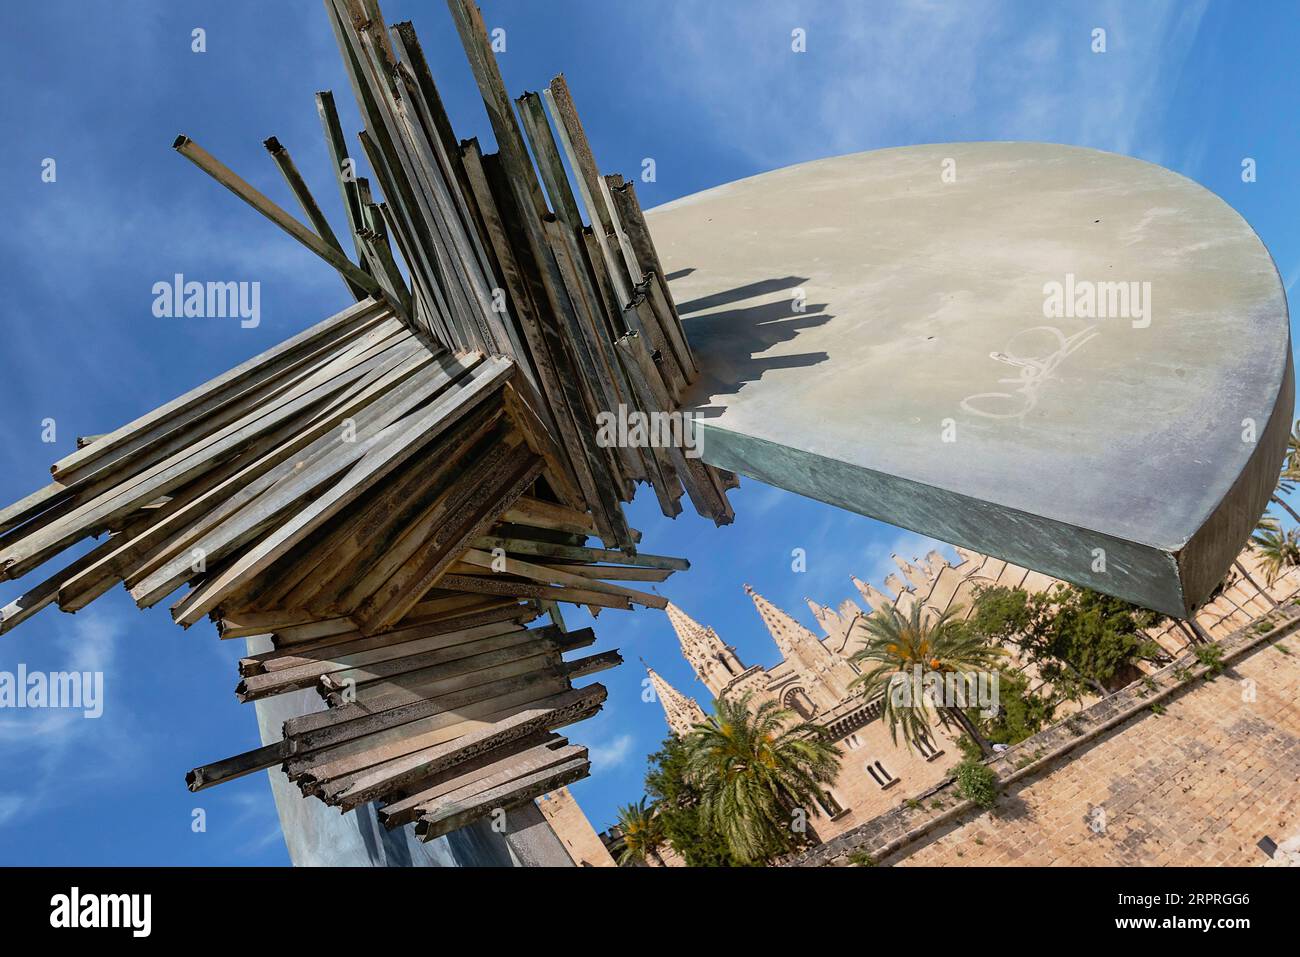 Spanien, Balearen, Mallorca, Palma de Mallorca, Altstadt. Abstrakte Skulptur im Parc de la Mar unterhalb der gotischen römisch-katholischen Kathedrale von Santa Maria. Stockfoto